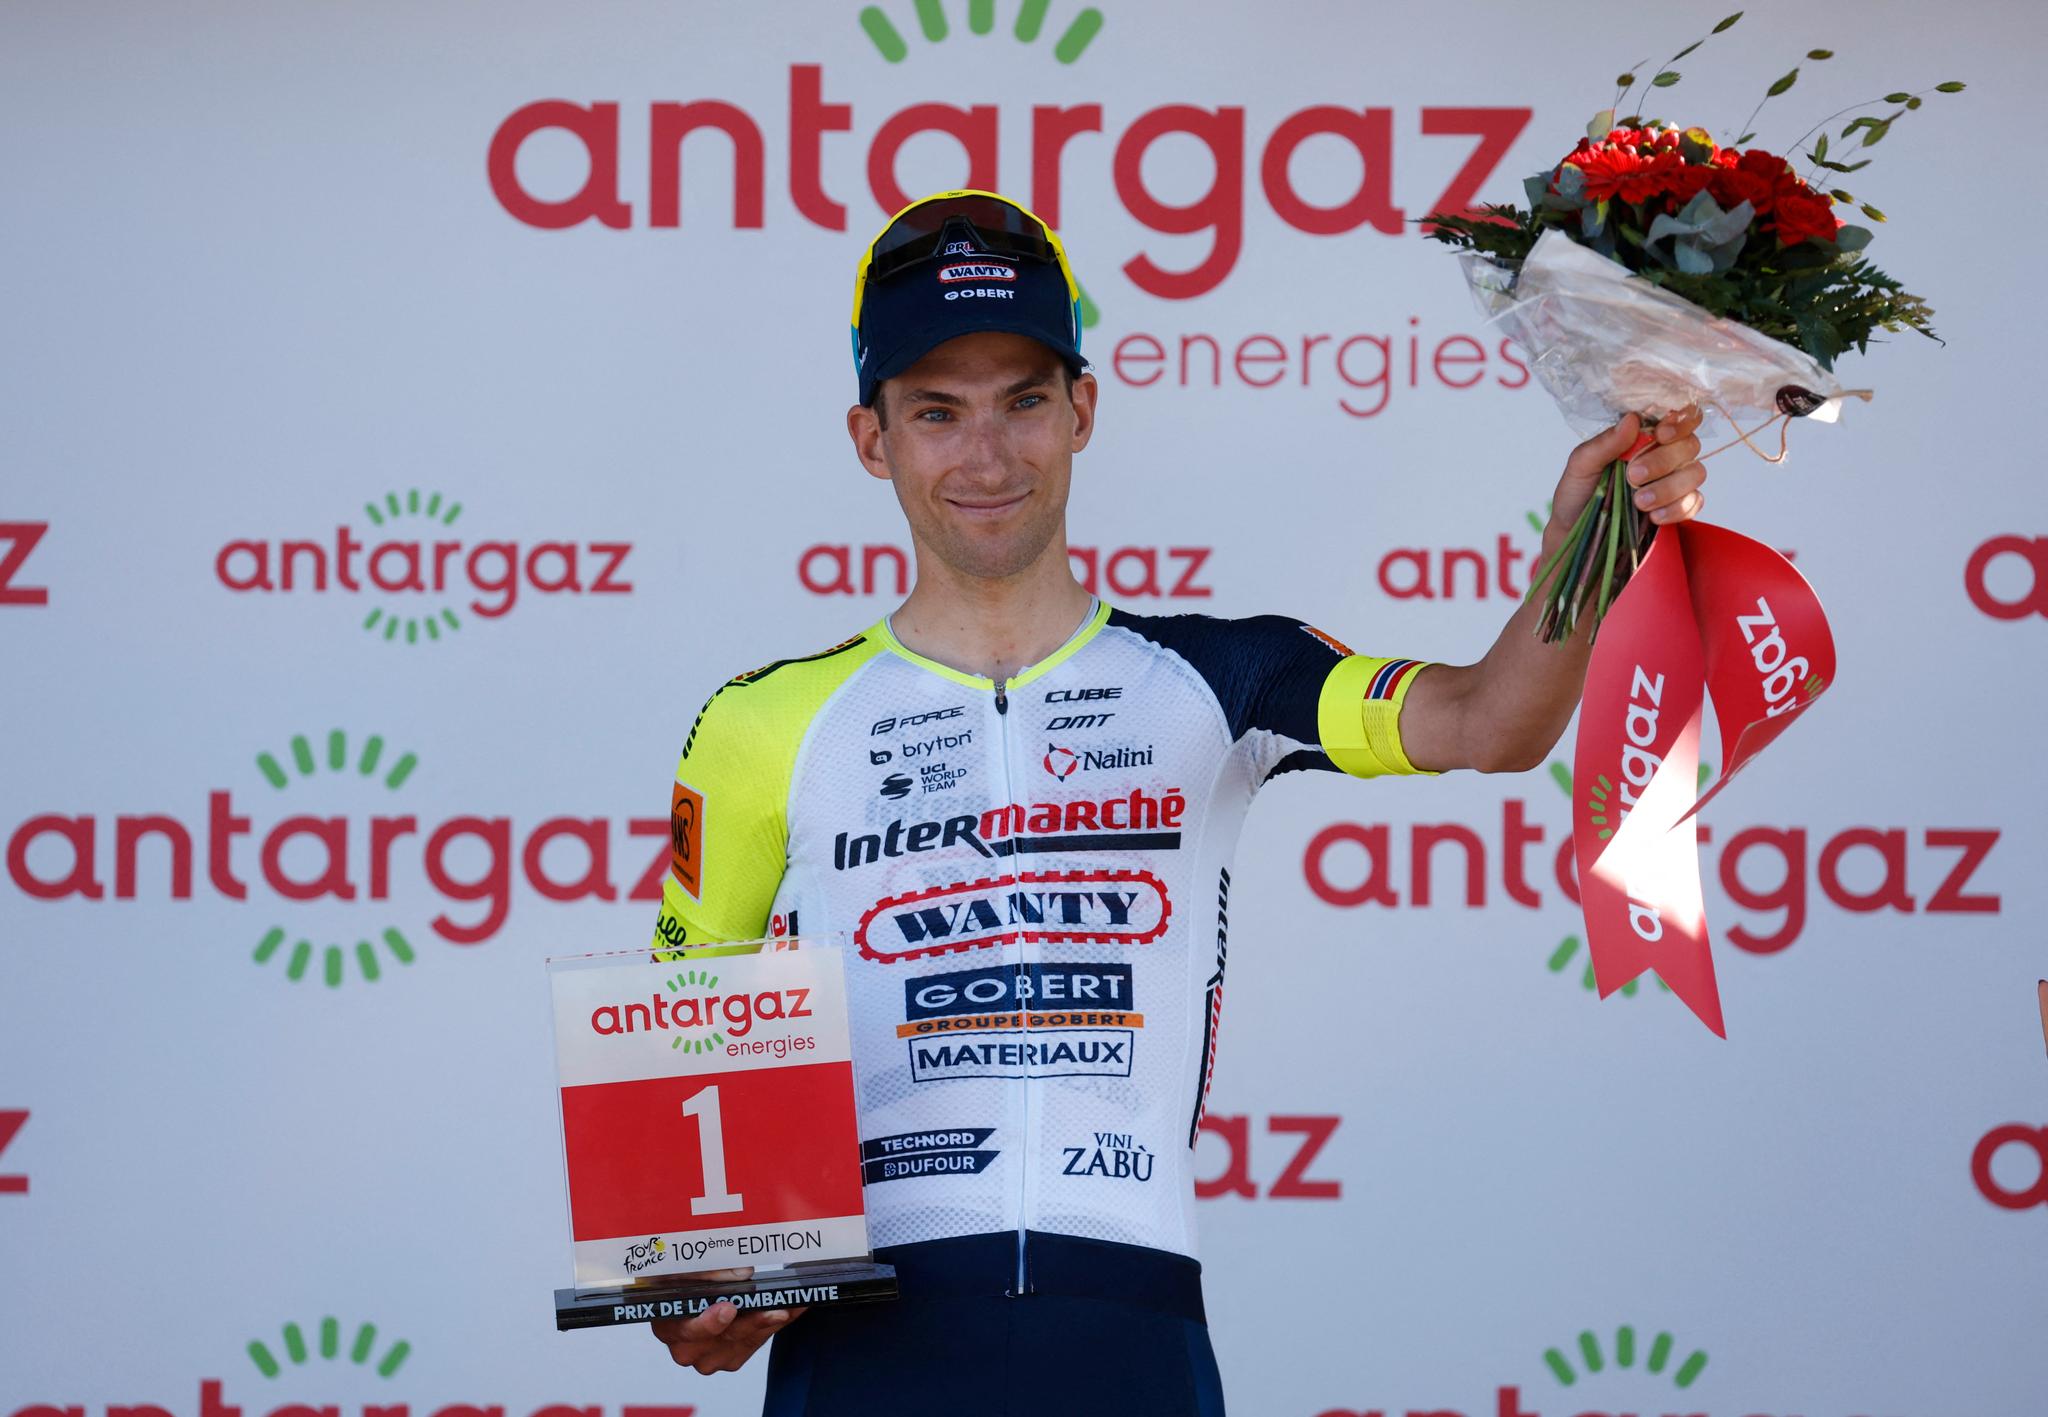 PÅ PODIET: Sven Erik Bystrøm ble kåret til etappens mest offensive rytter.